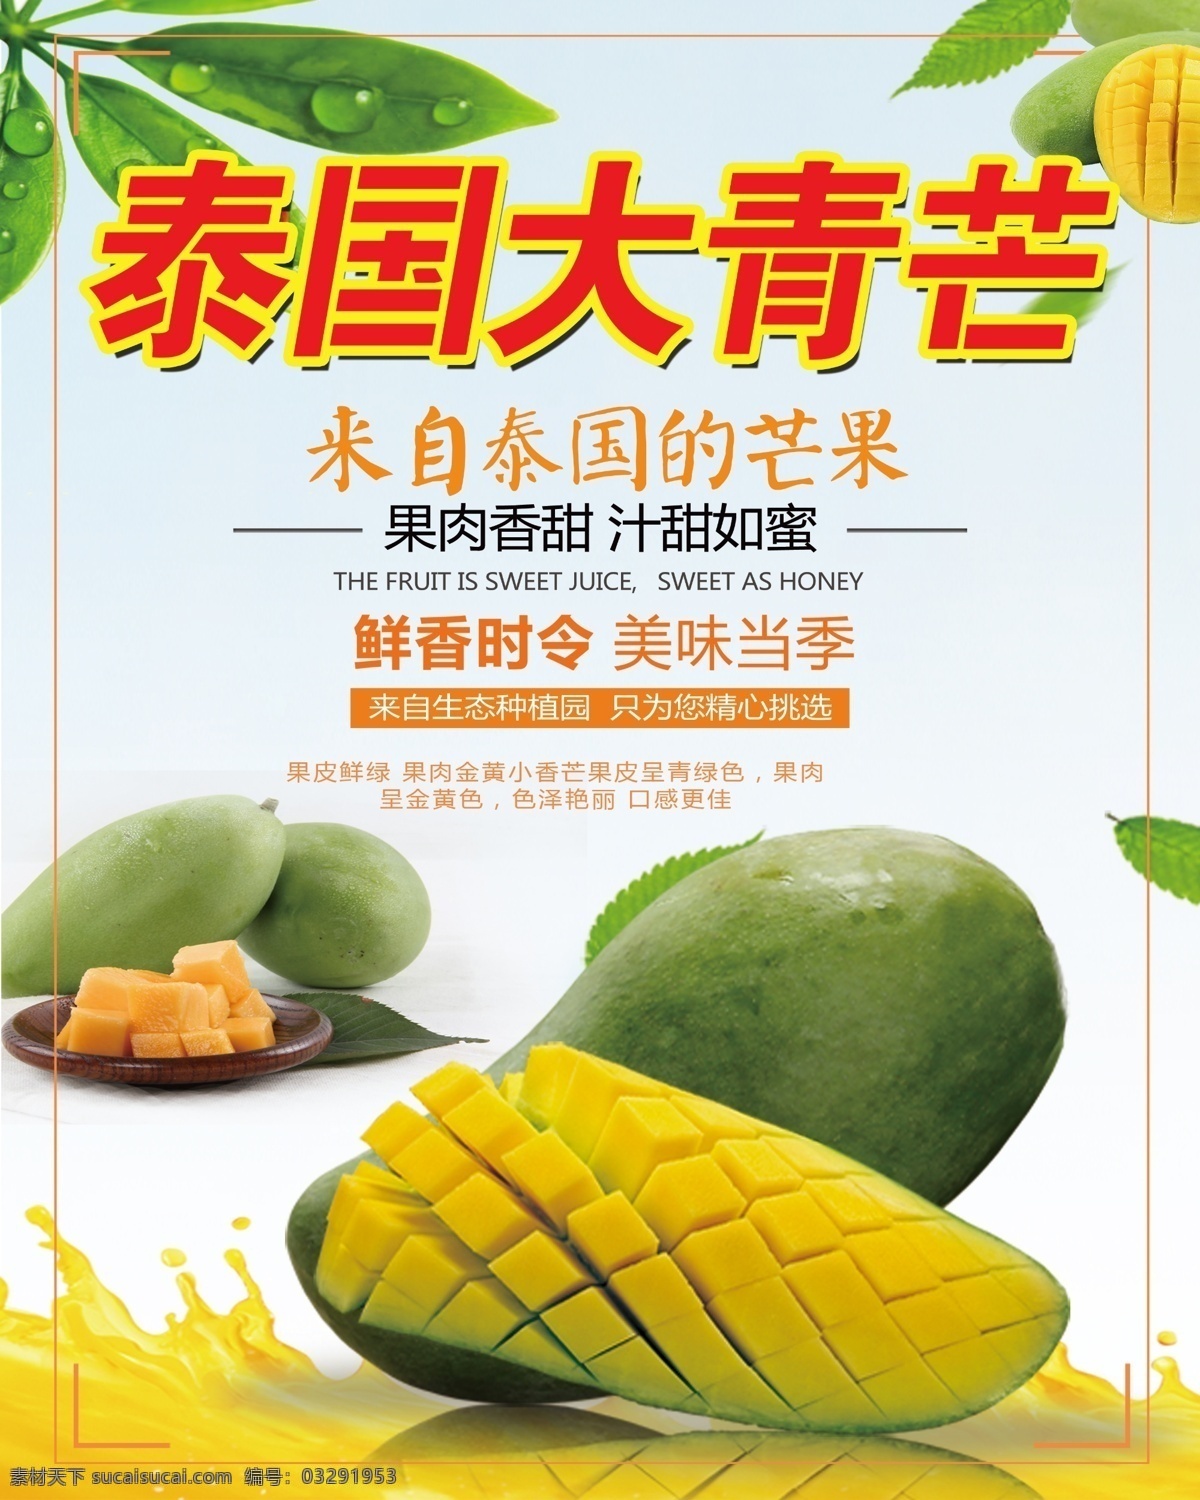 泰国青芒 青芒海报 首页海报 芒果海报 水果首页 泰国 水果 芒果 分层 食品